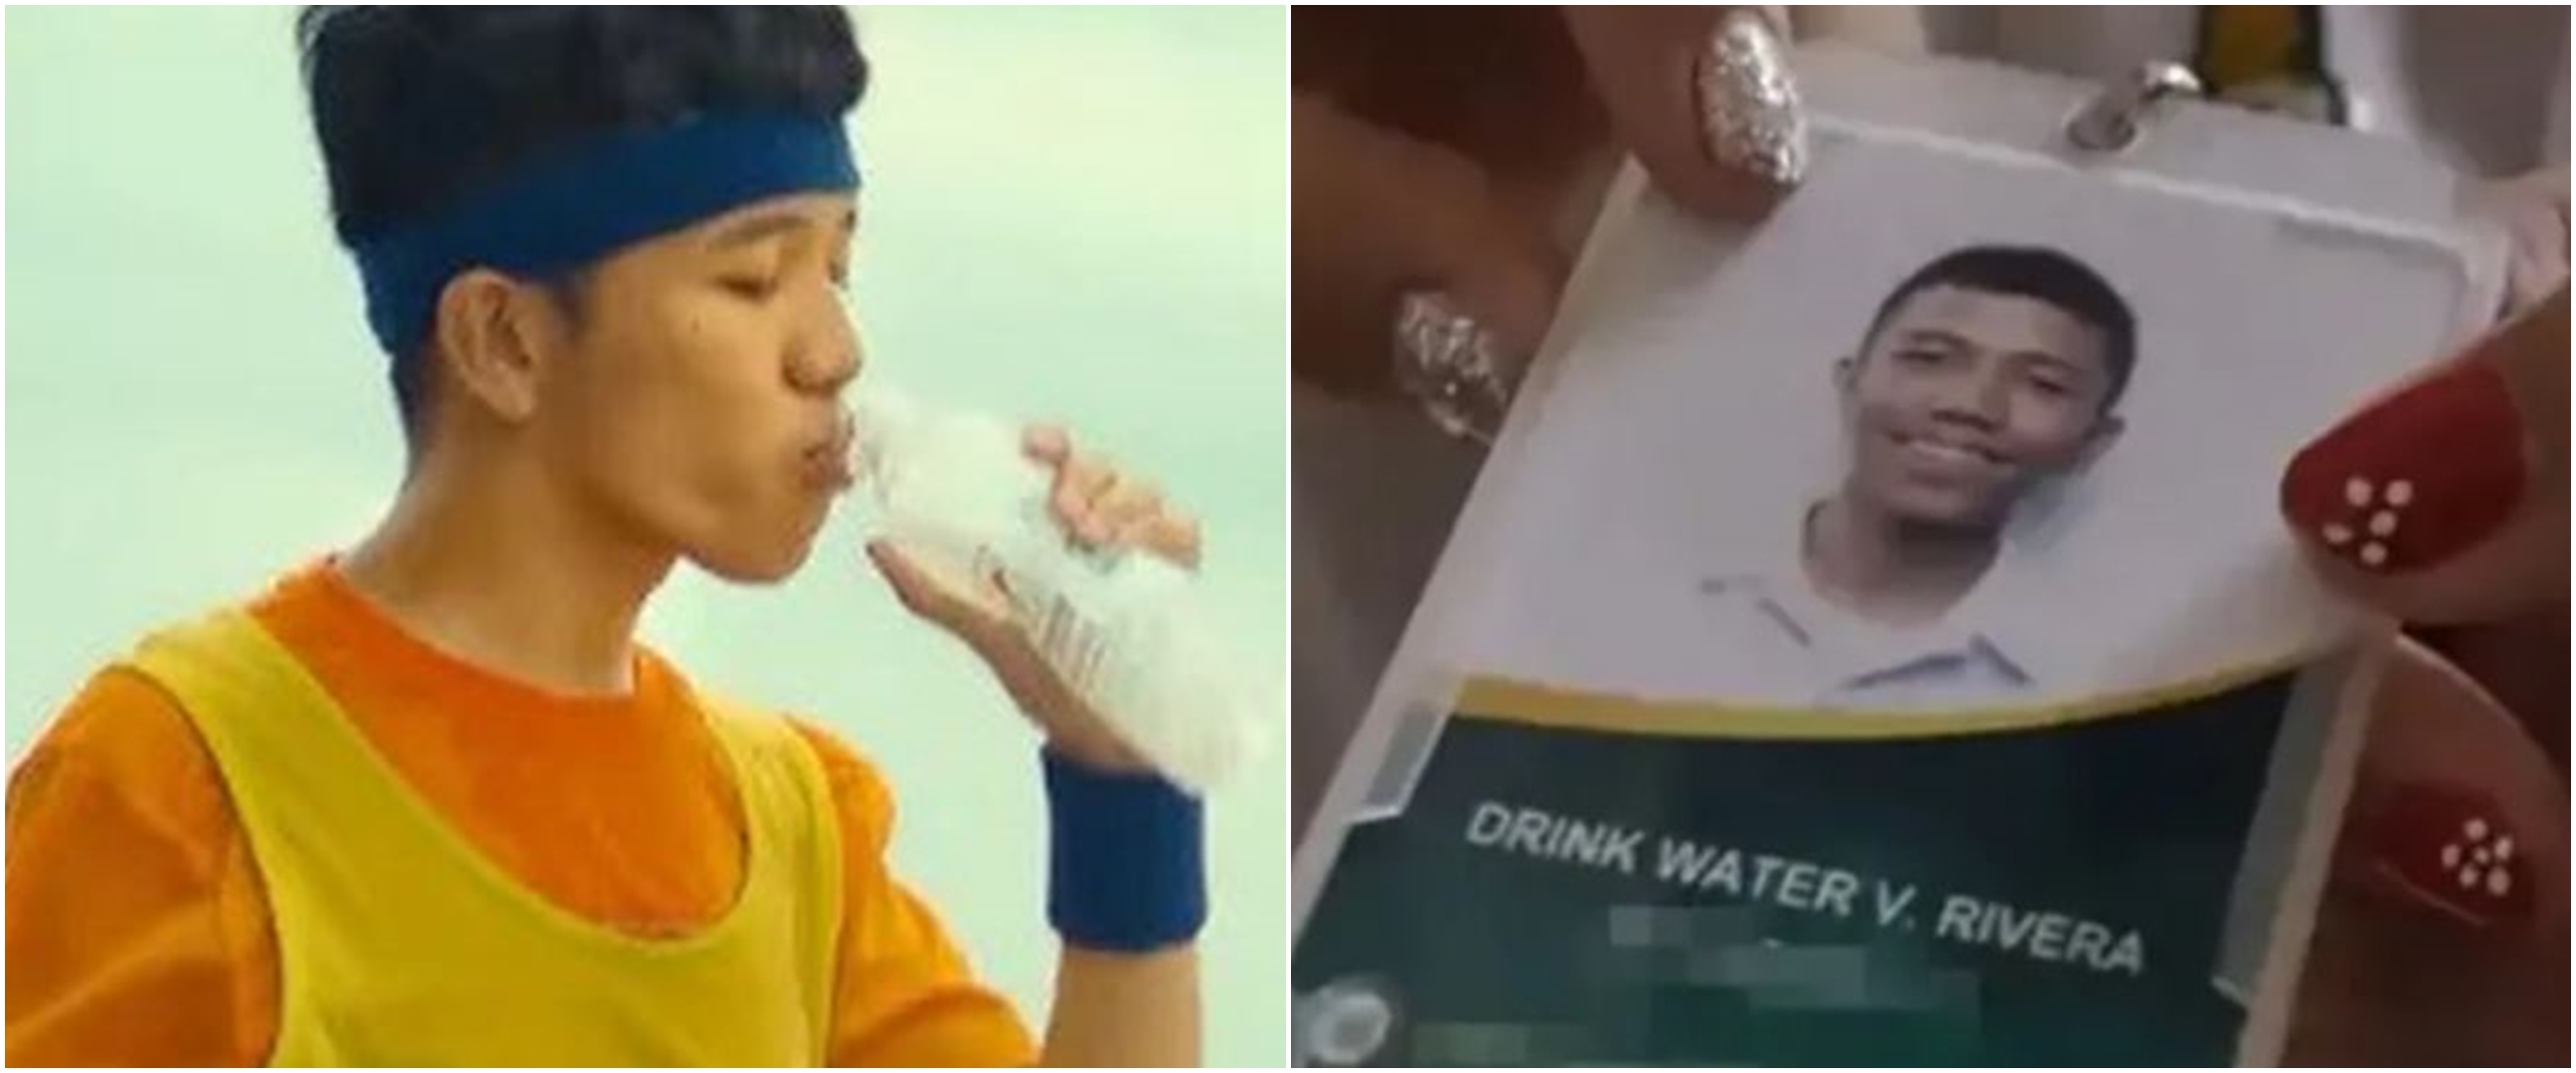 Kebetulan yang unik, pria bernama 'Drink Water' ini diterima kerja di pabrik minuman